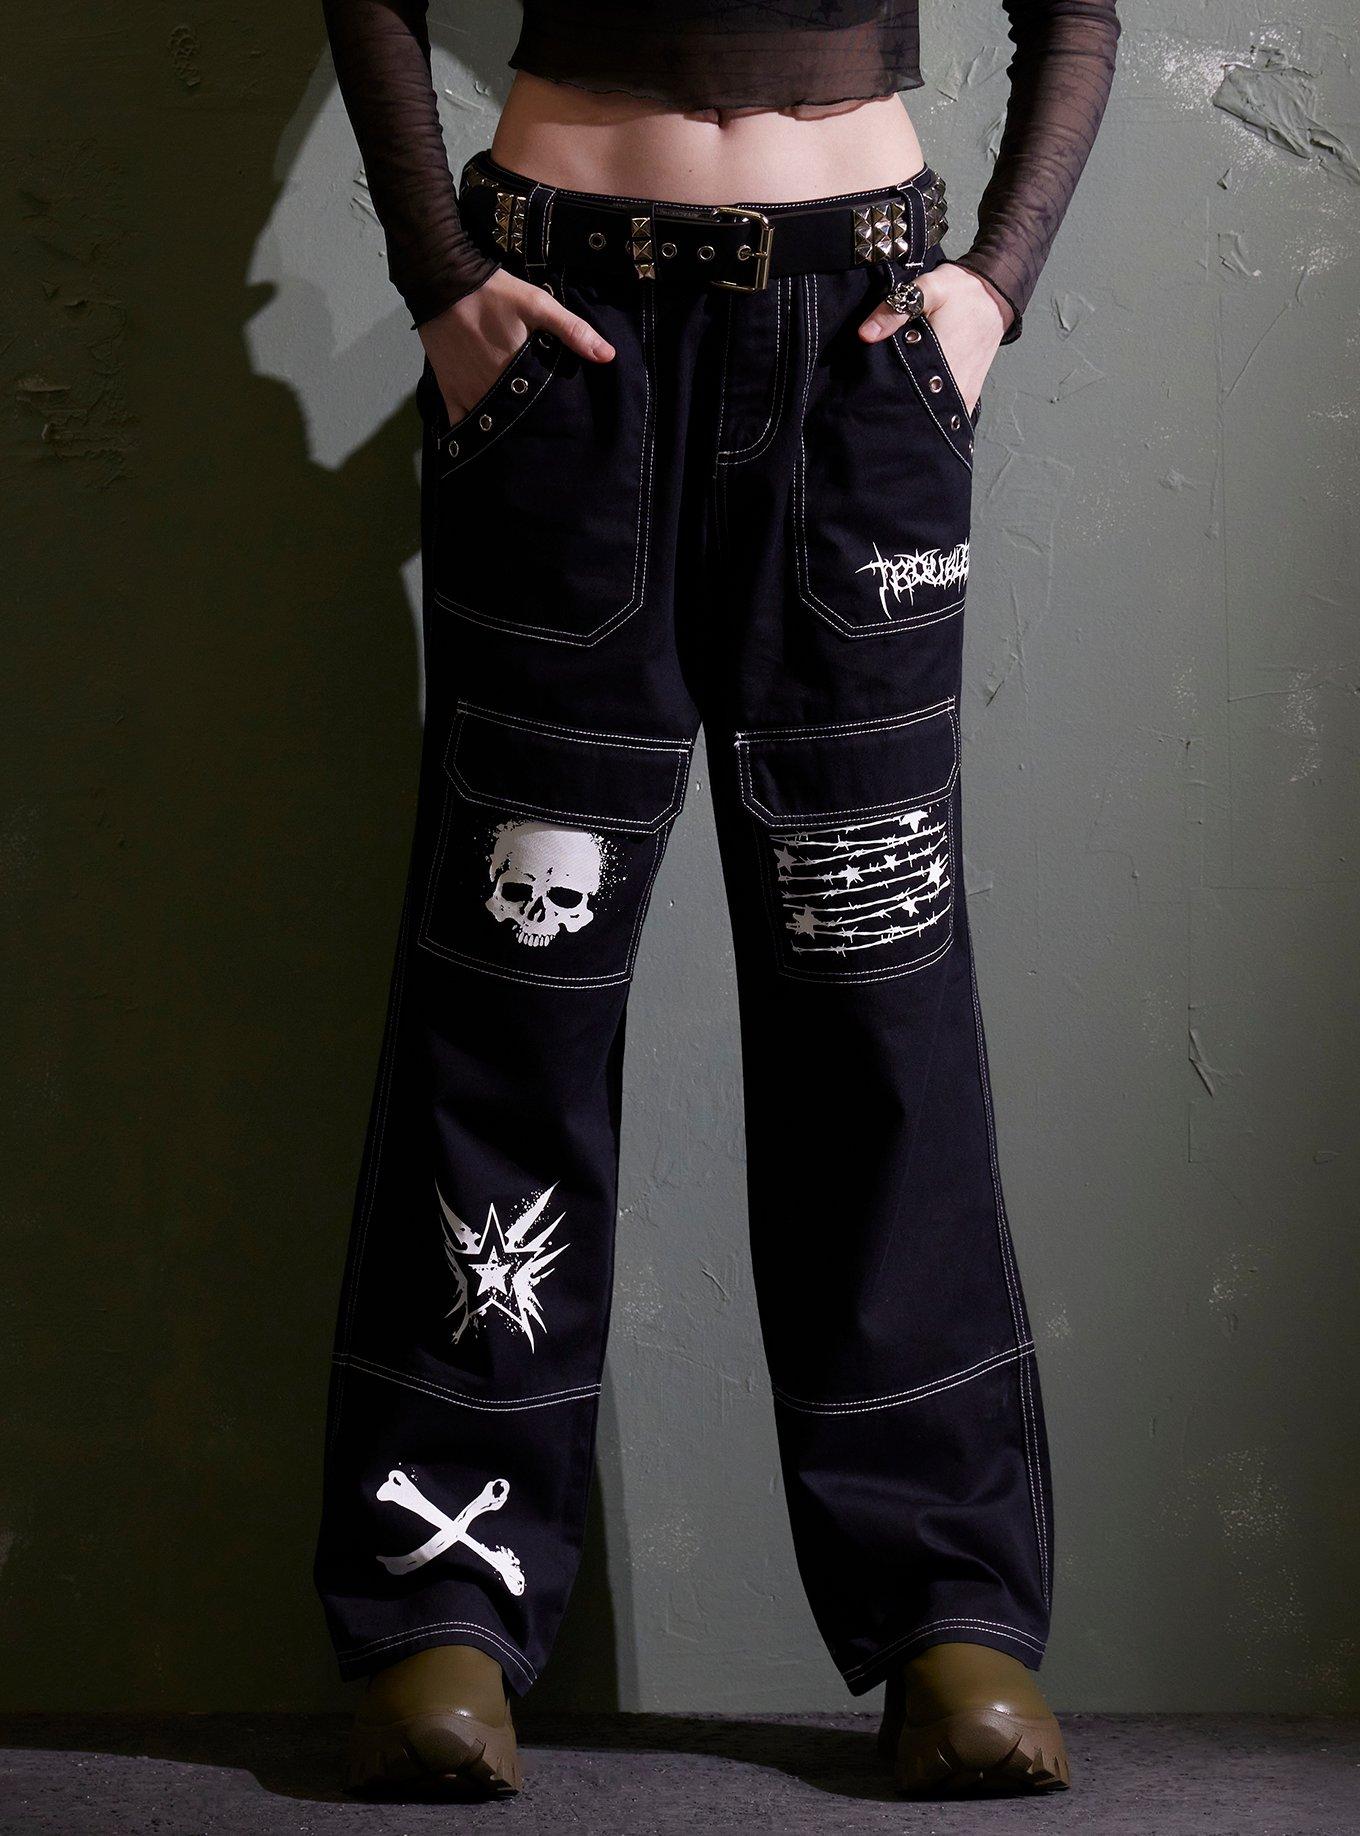 Hot Topic Black Grommet Carpenter Pants Cargo Tripp Pants Size 5 Punk  Gothic Emo